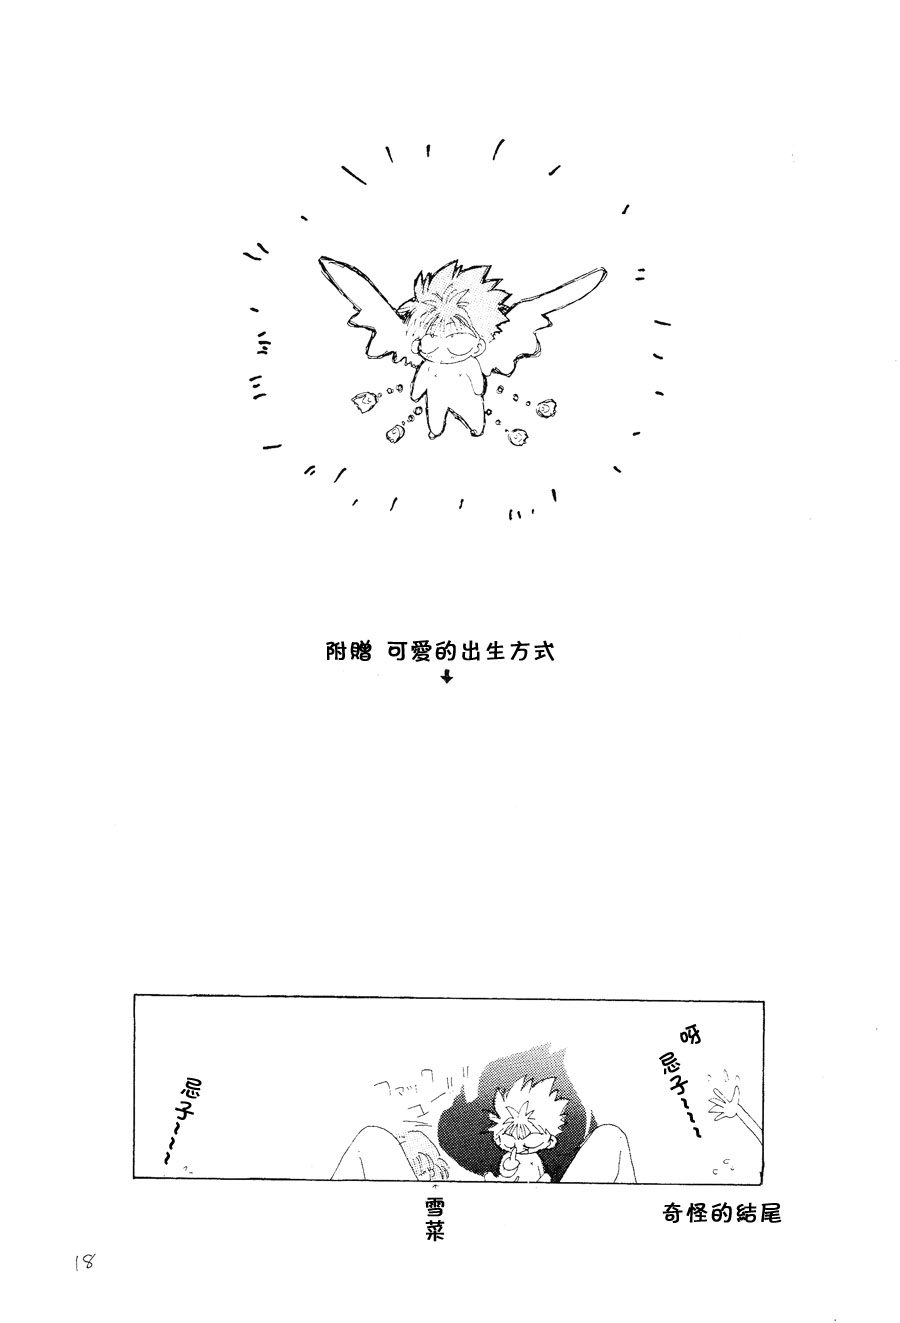 【漫画】PIKAPIKA/タカハシマコ《彩虹维奥莱塔》 Img_6885